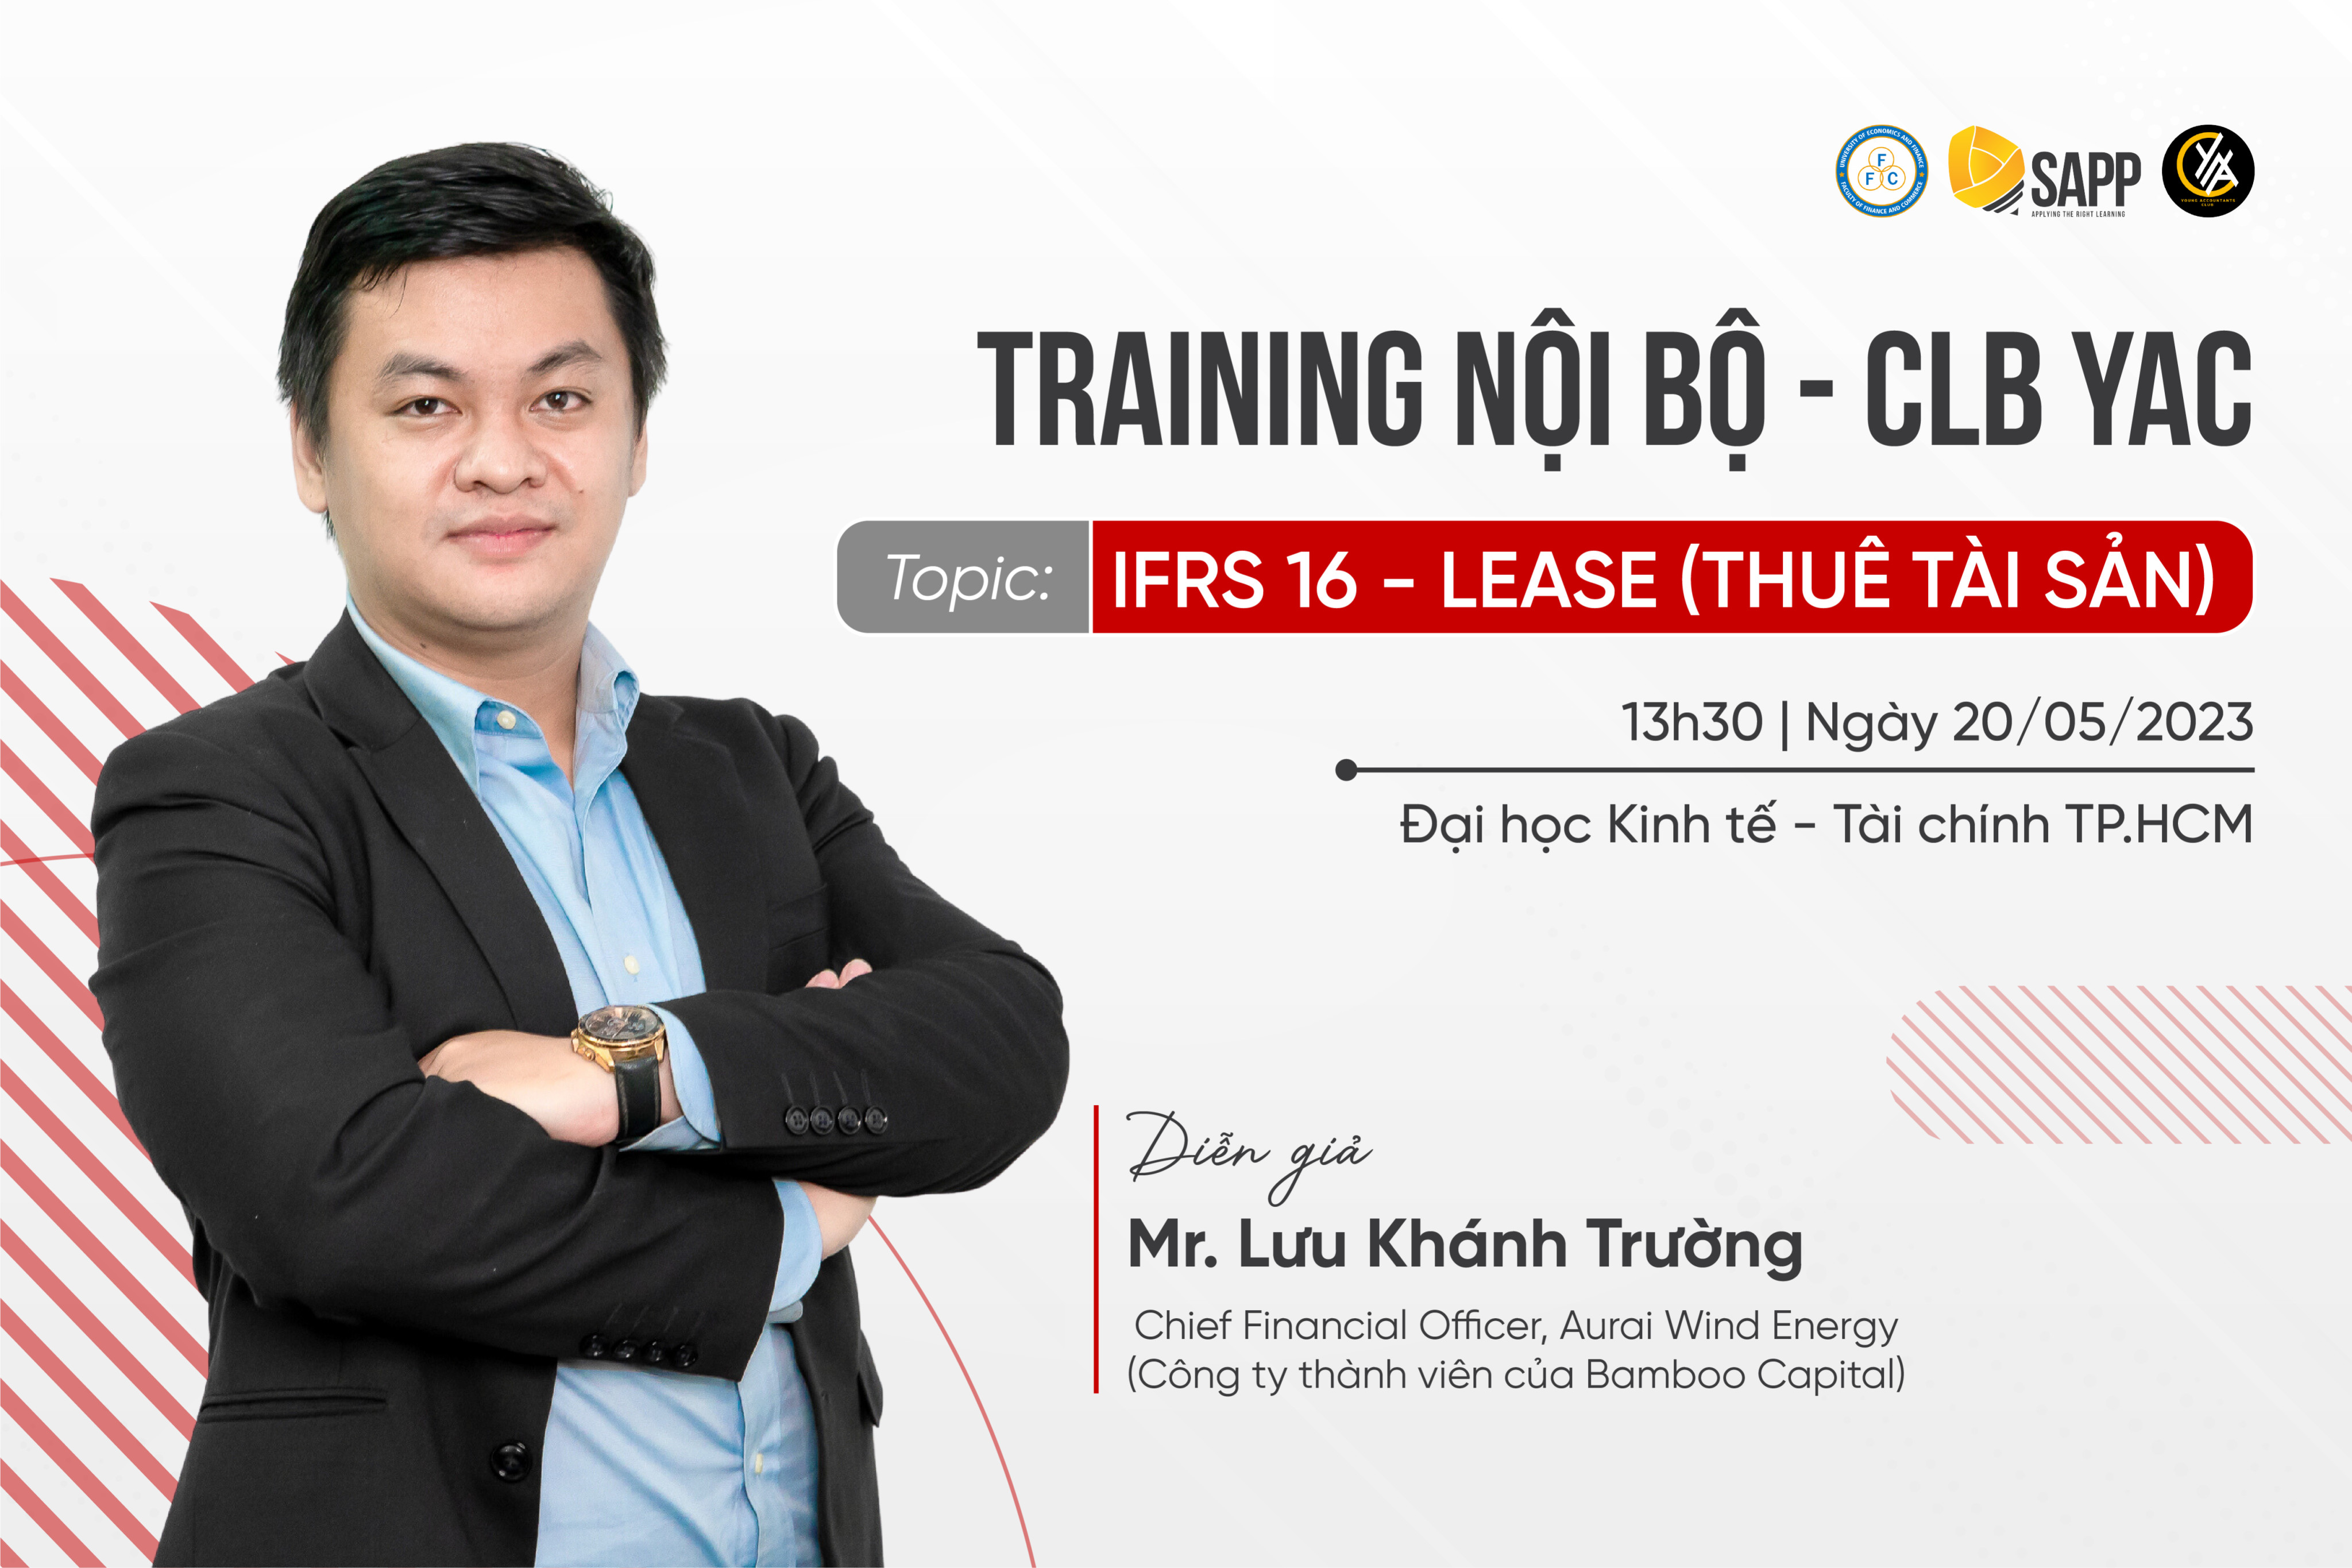 Training Nội Bộ CLB YAC - Topic: IFRS 16 - Lease (Thuê tài sản)